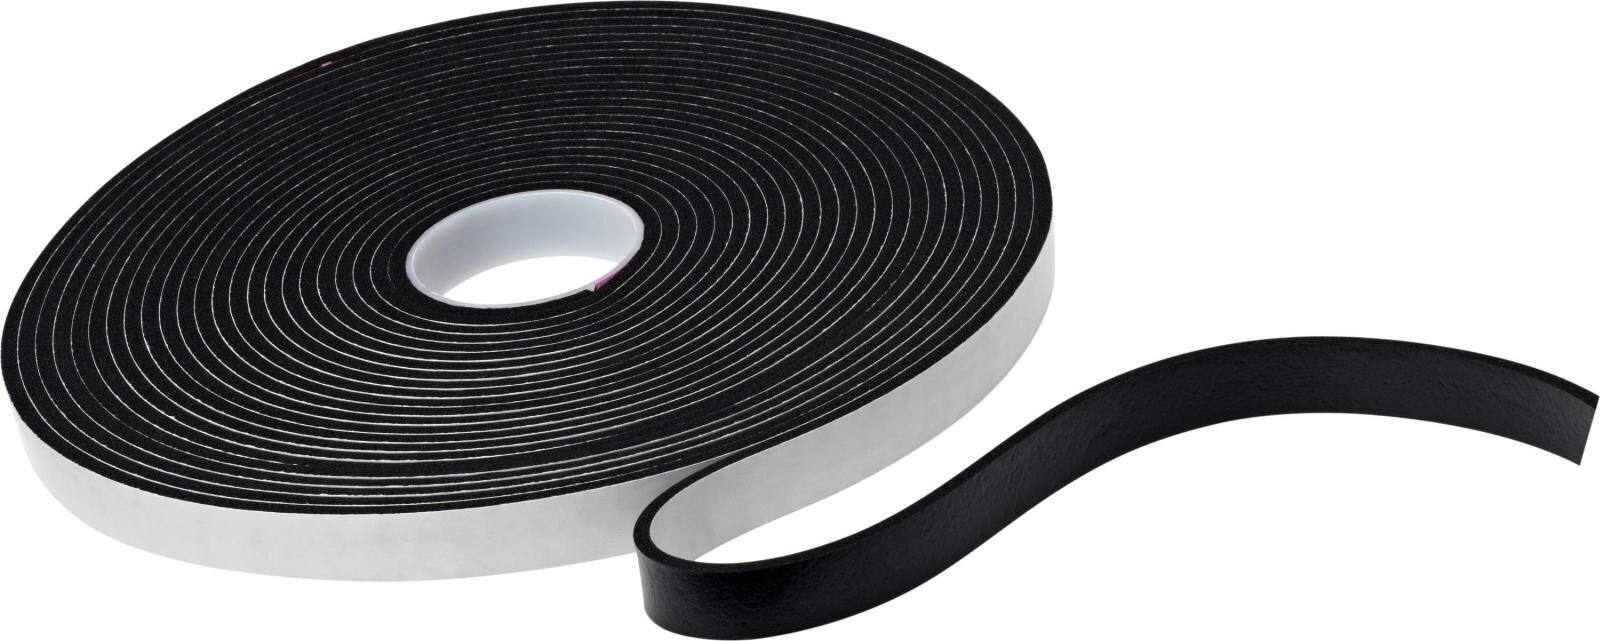 3M Enkelzijdig vinyl foam plakband 4714, zwart, 25 mm x 16,5 m, 6,4 m